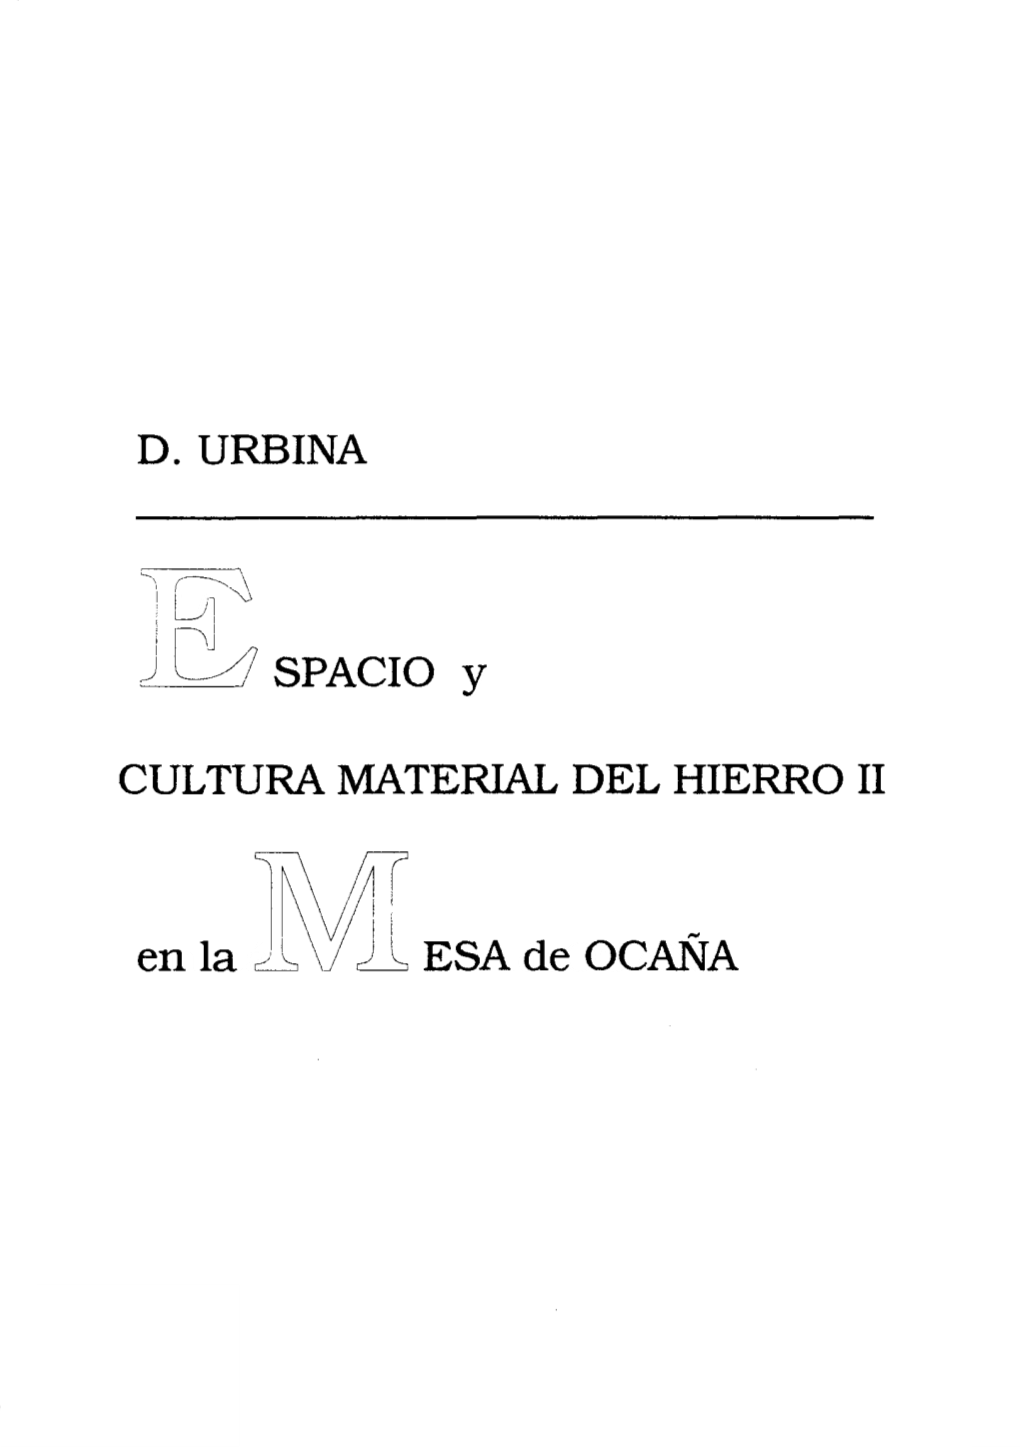 D. URBINA SPACIO Y CULTURA MATERIAL DEL HIERRO II Enlaá Esadeocana